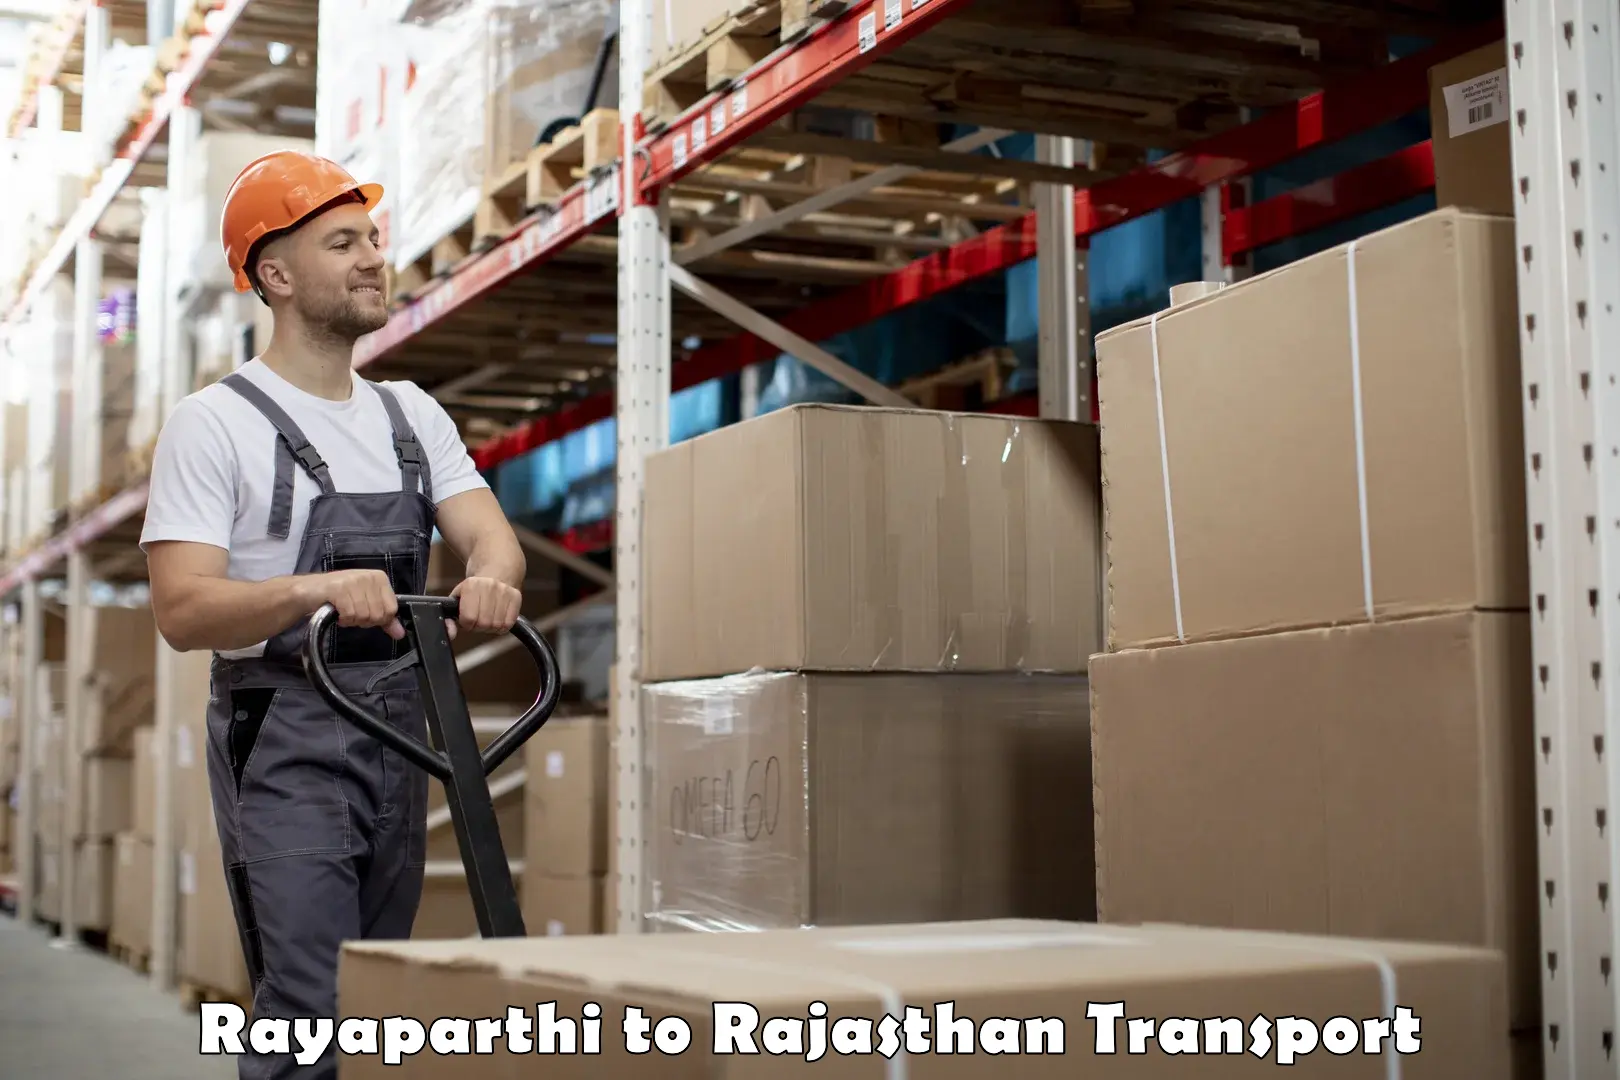 Pick up transport service Rayaparthi to Kuchaman